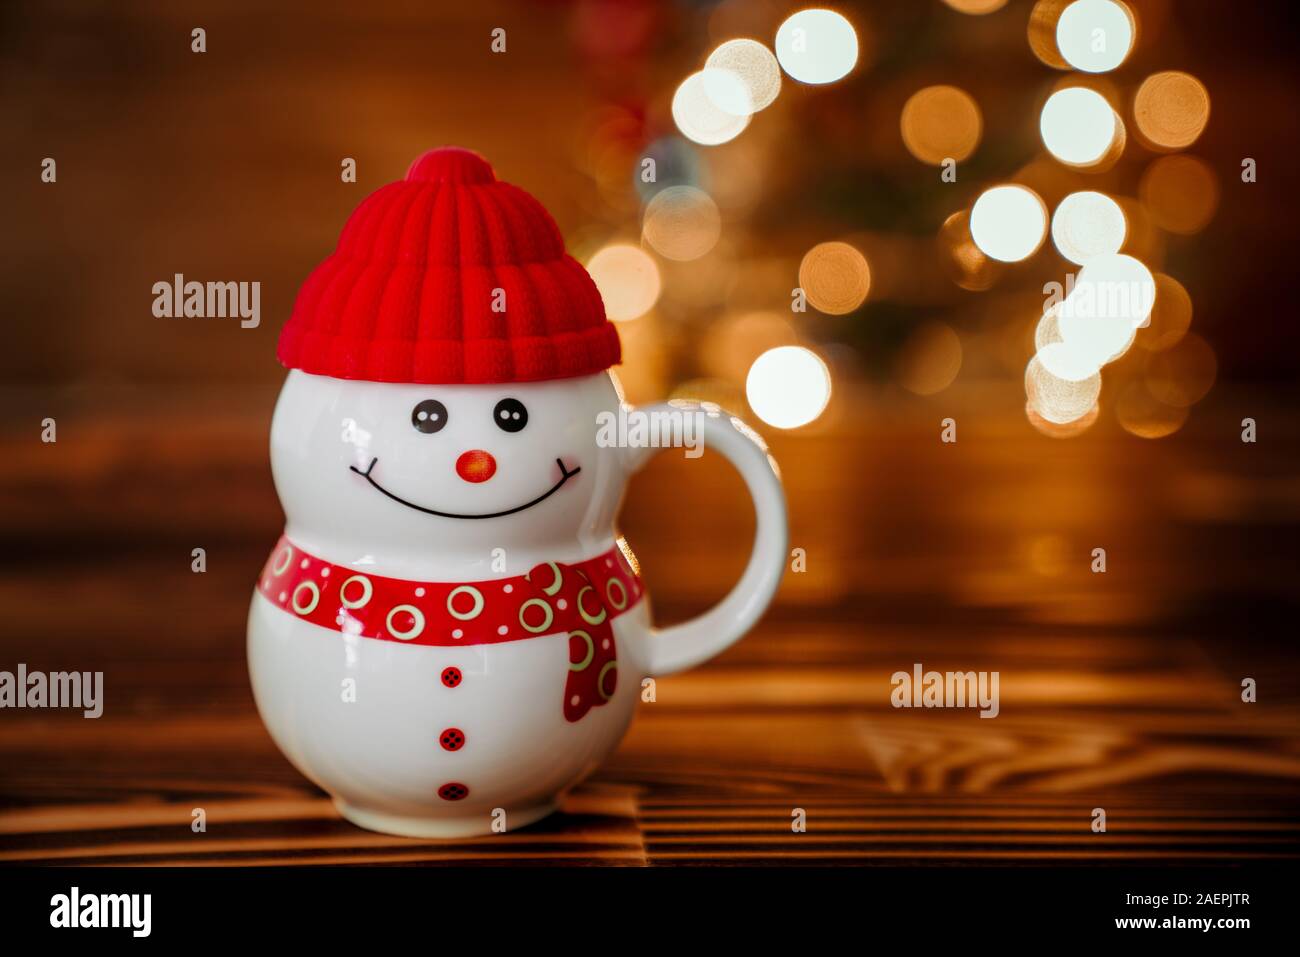 Eine Schale mit Weihnachten Konzept und geschmückten Weihnachtsbaum. Neues Jahr Konzept. Stockfoto